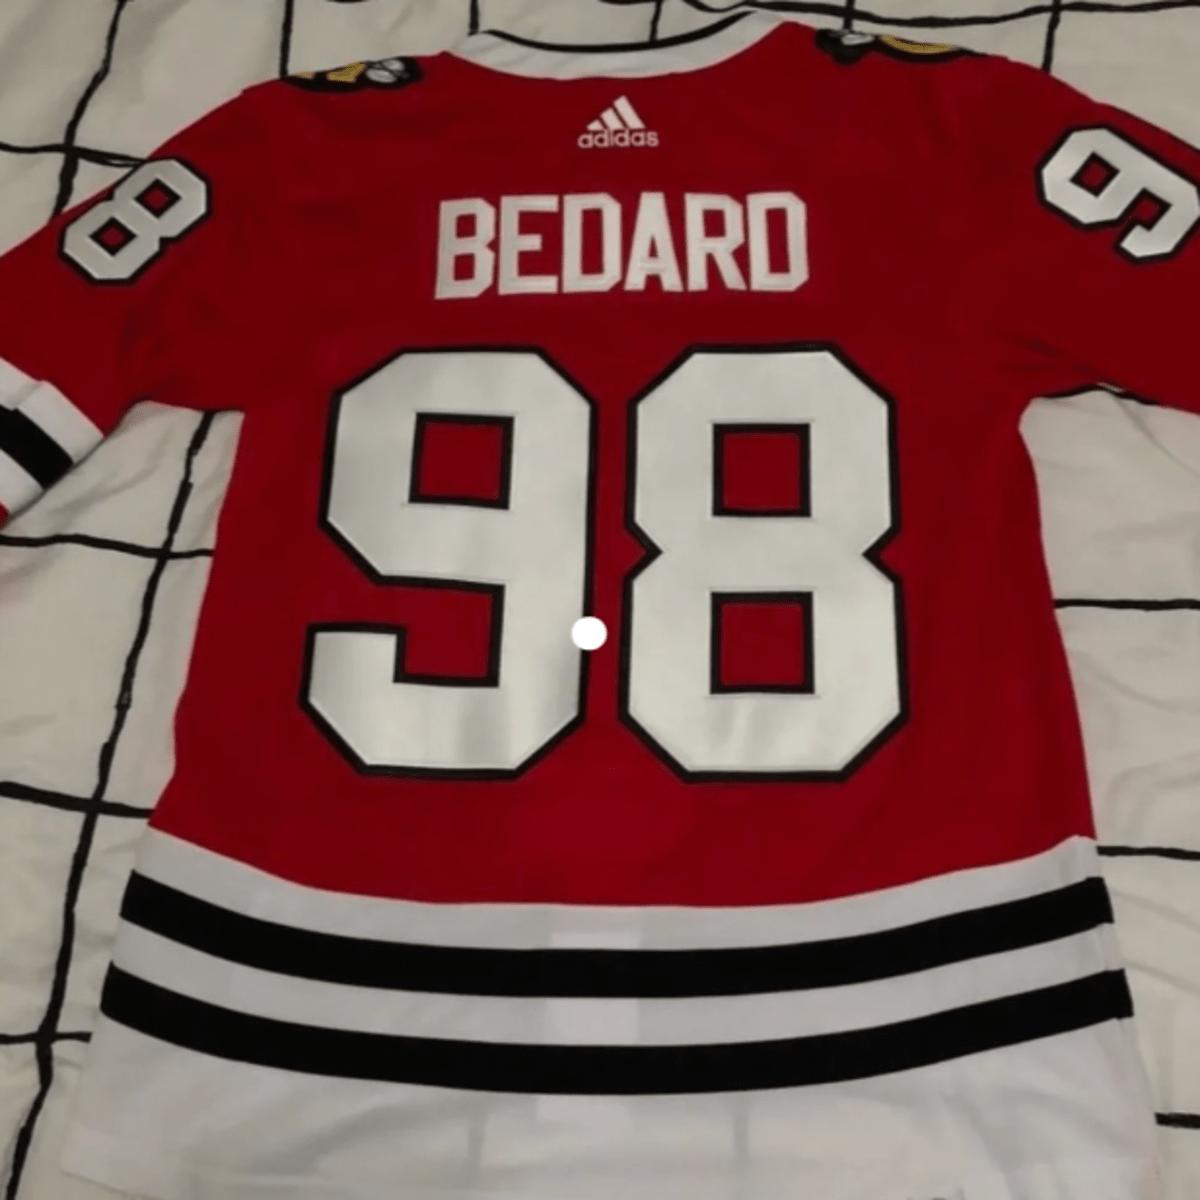 Bedard's Blackhawks jersey top seller in NHL since June